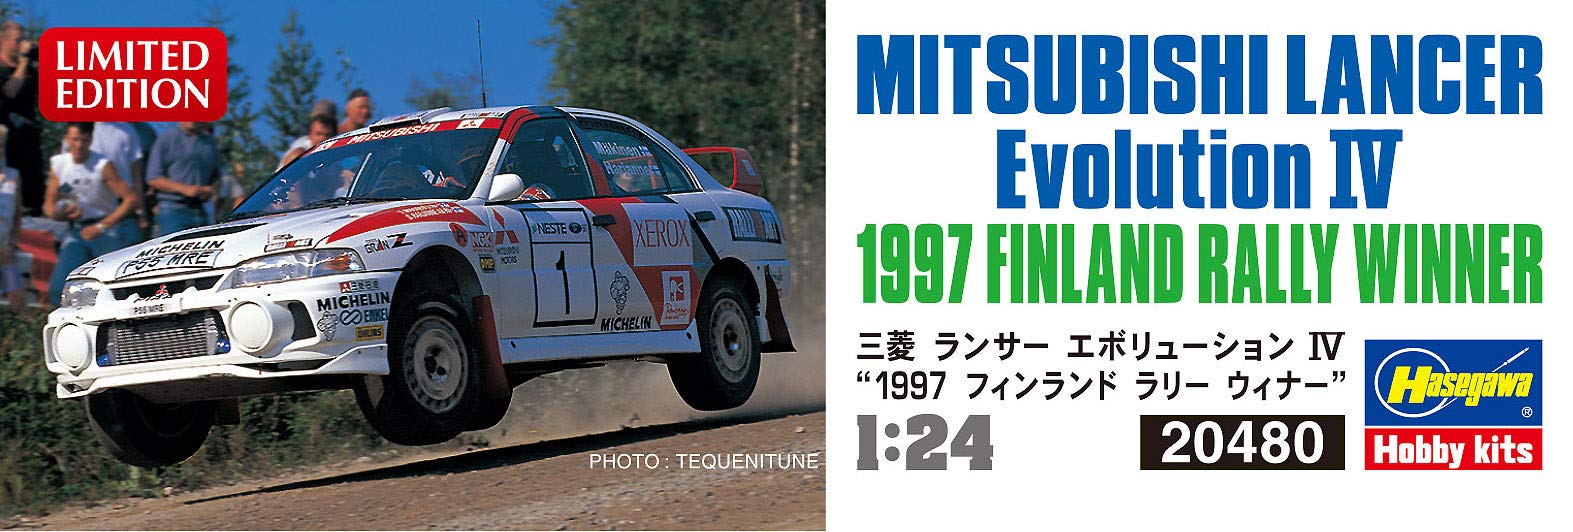 Hasegawa 1/24 Mitsubishi Lancer Evolution IV 1997 Finnland Rallye-Sieger Kunststoff-Rennwagen